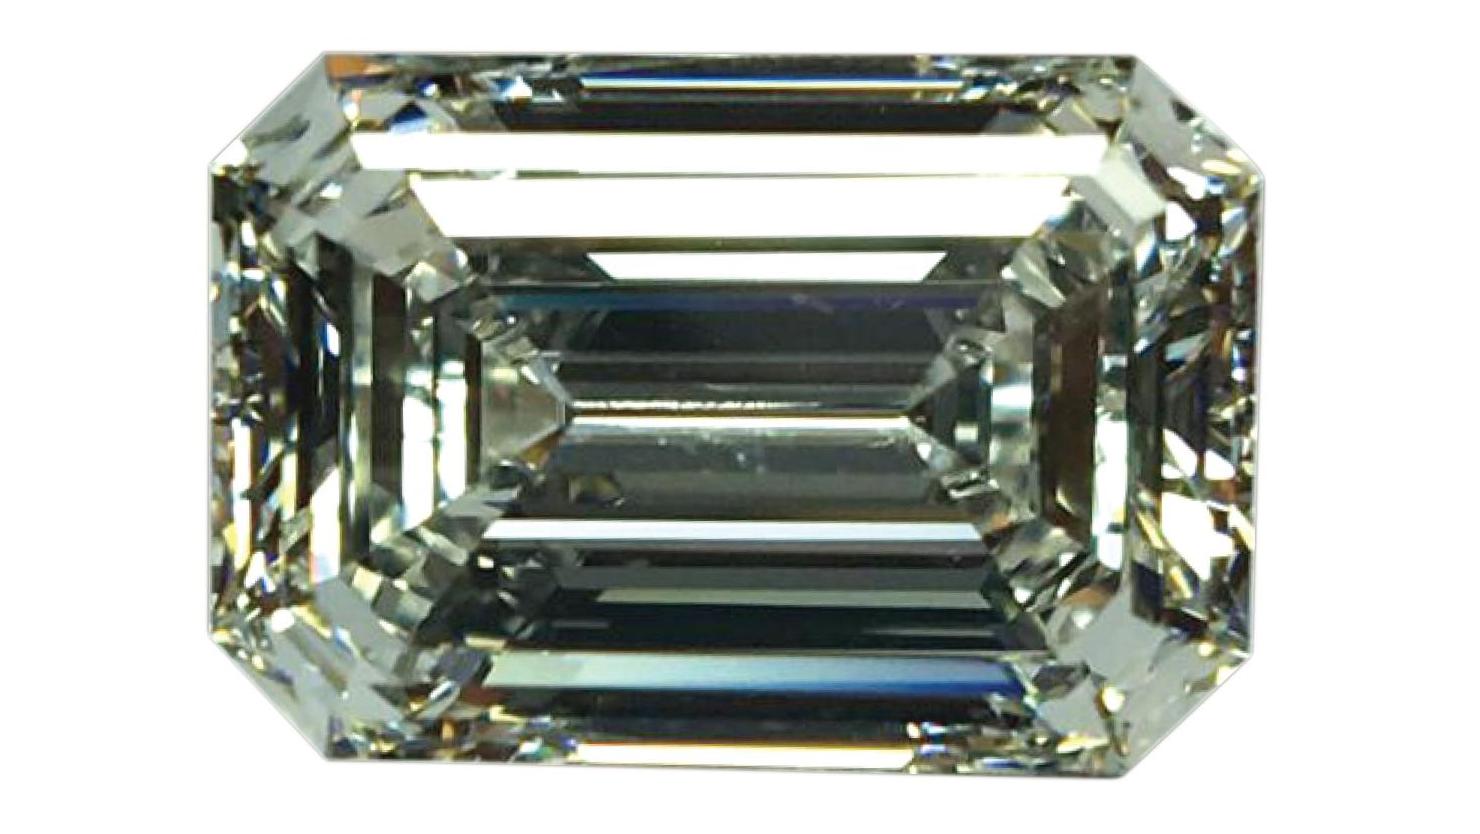   Les diamants de Zirnkilton